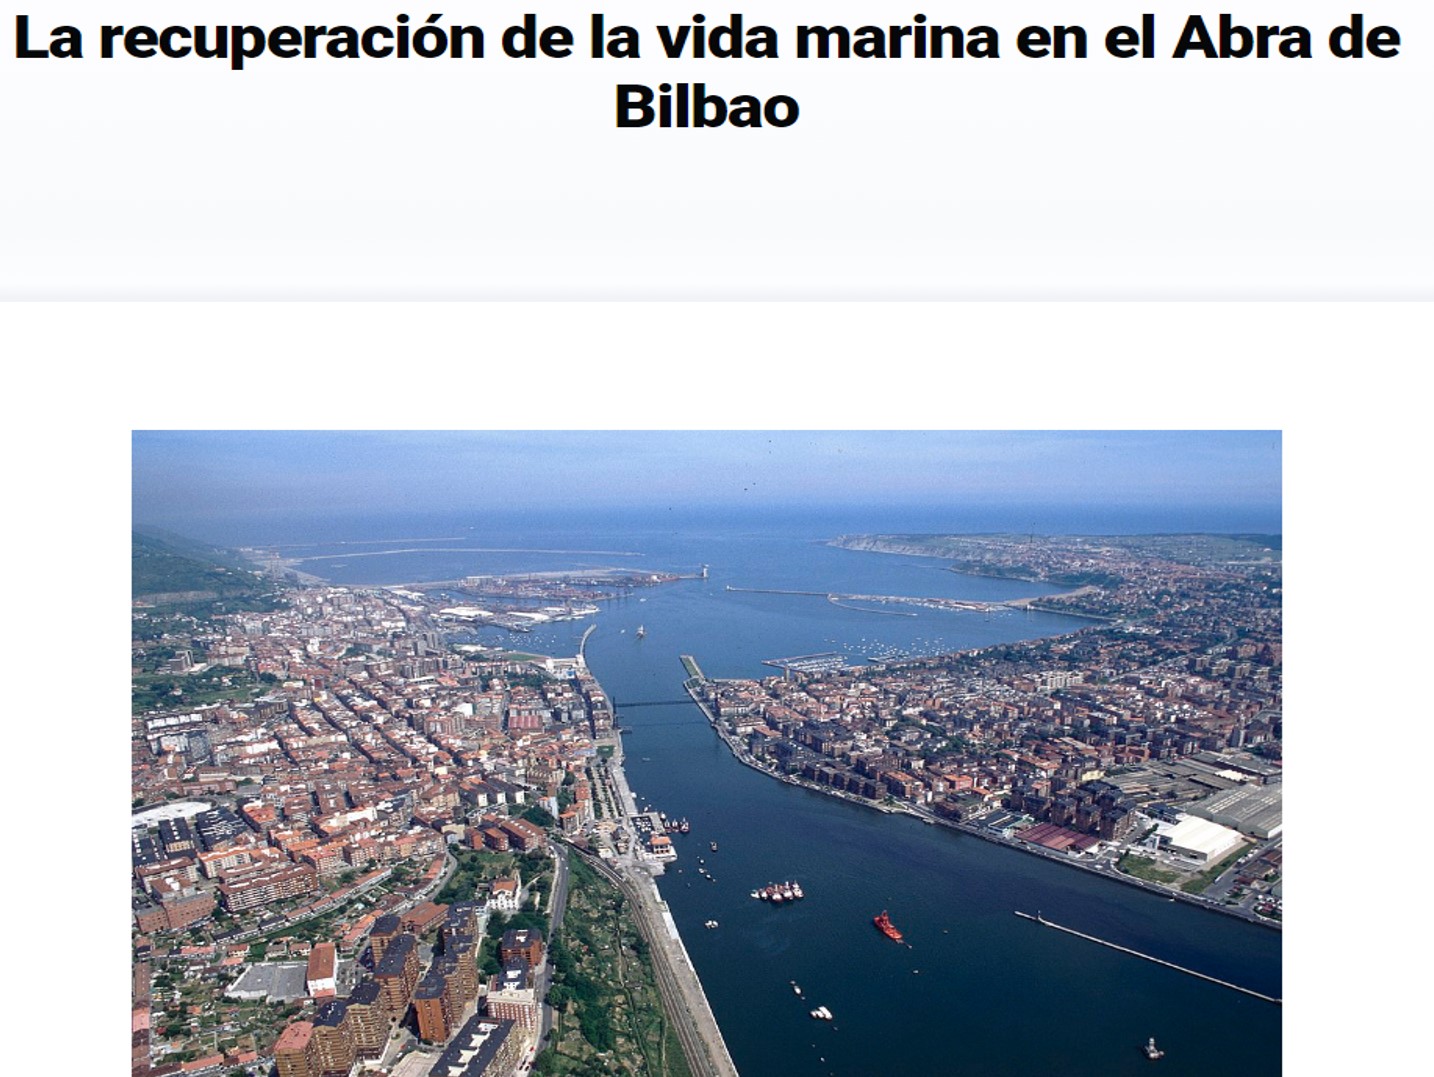 La recuperación de la vida marina en el Abra de Bilbao